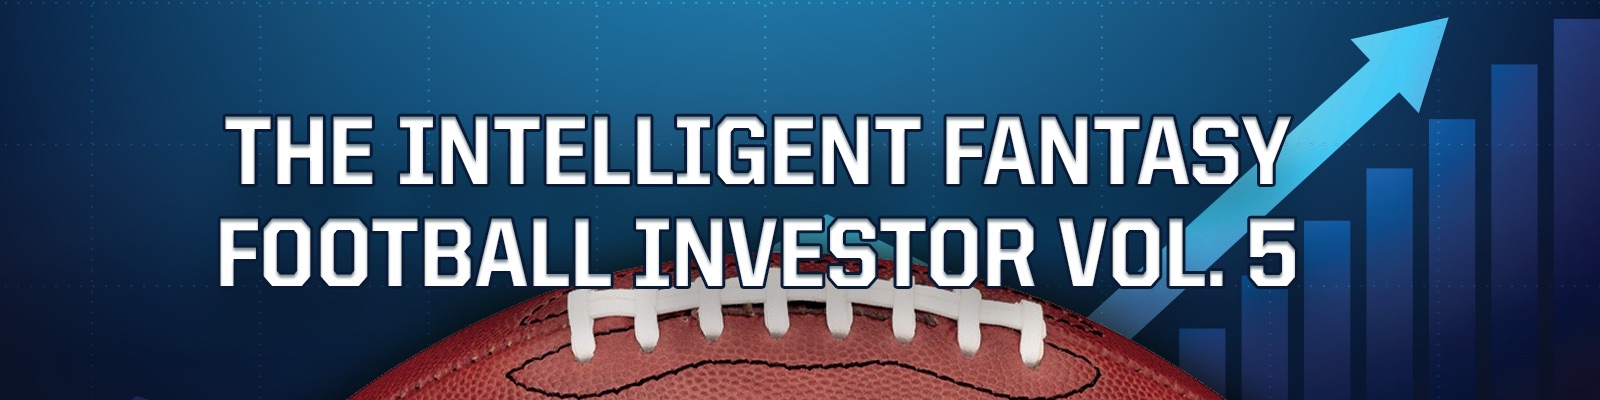 The Intelligent Fantasy Football Investor Vol. 5